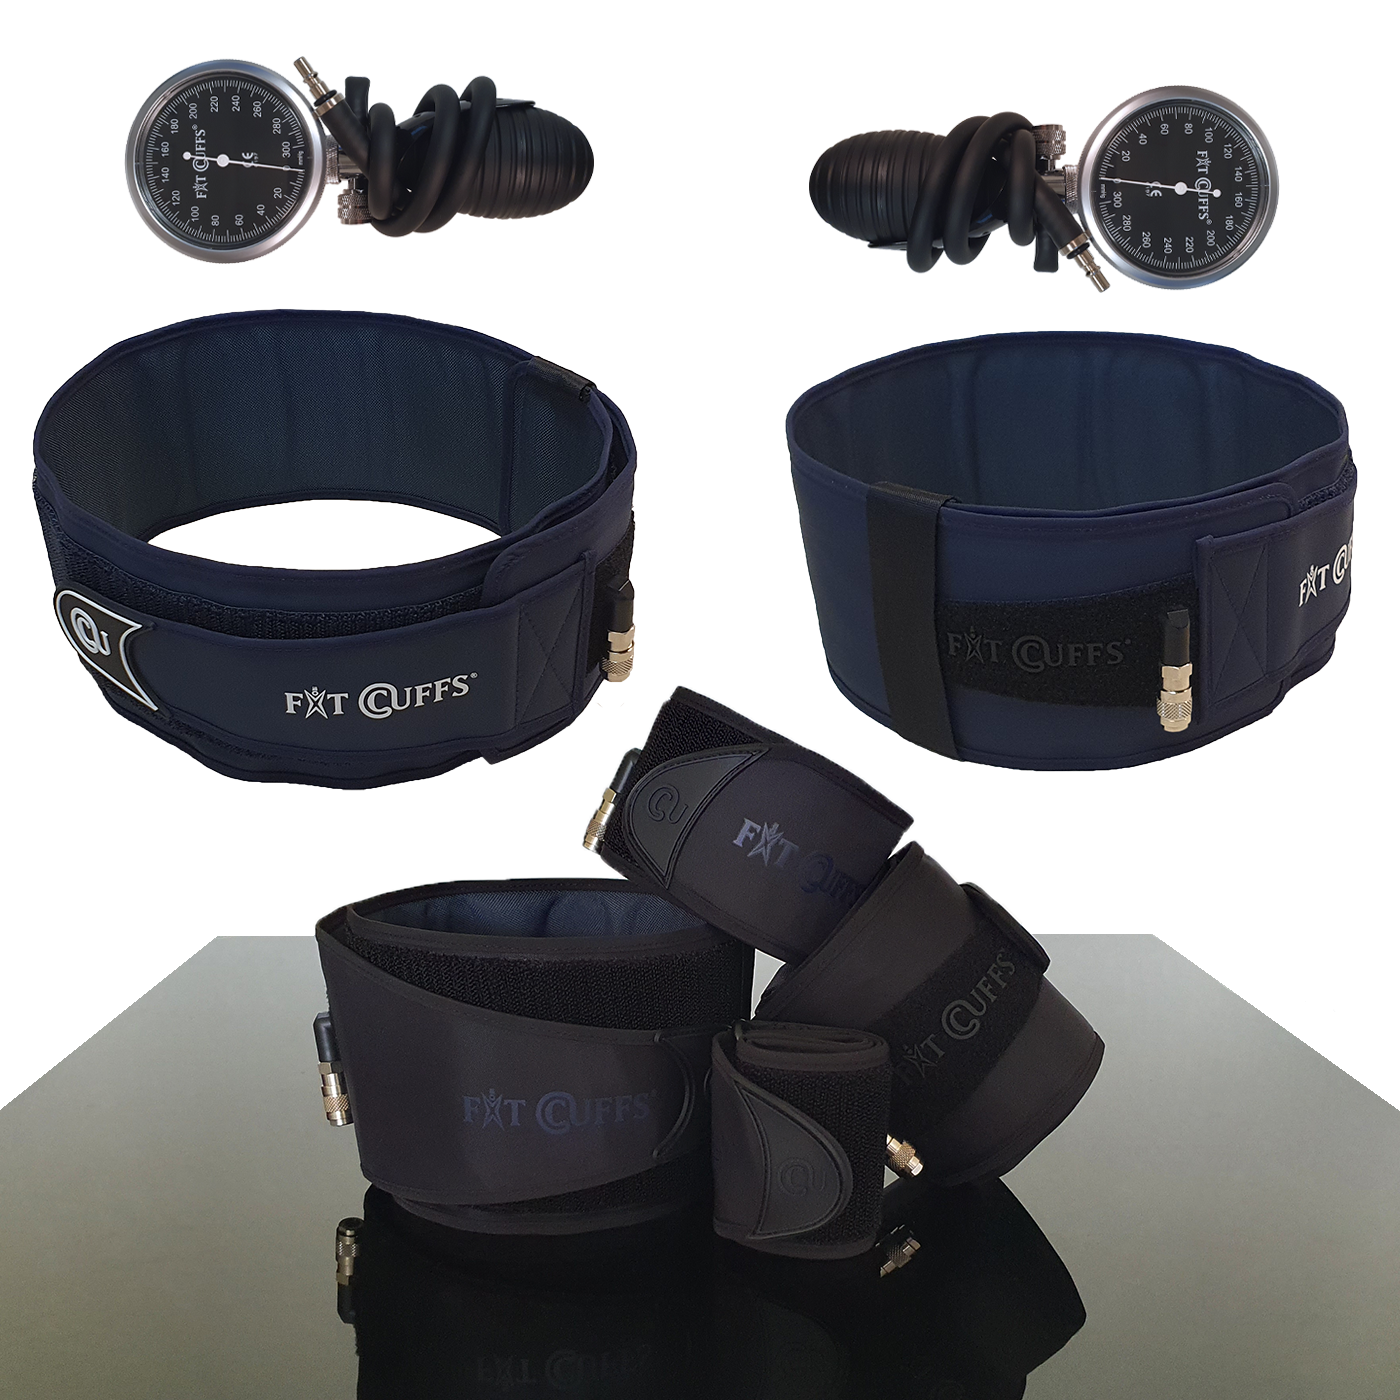 Billede af Fit Cuffs - Complete x 2 - Standard - Black